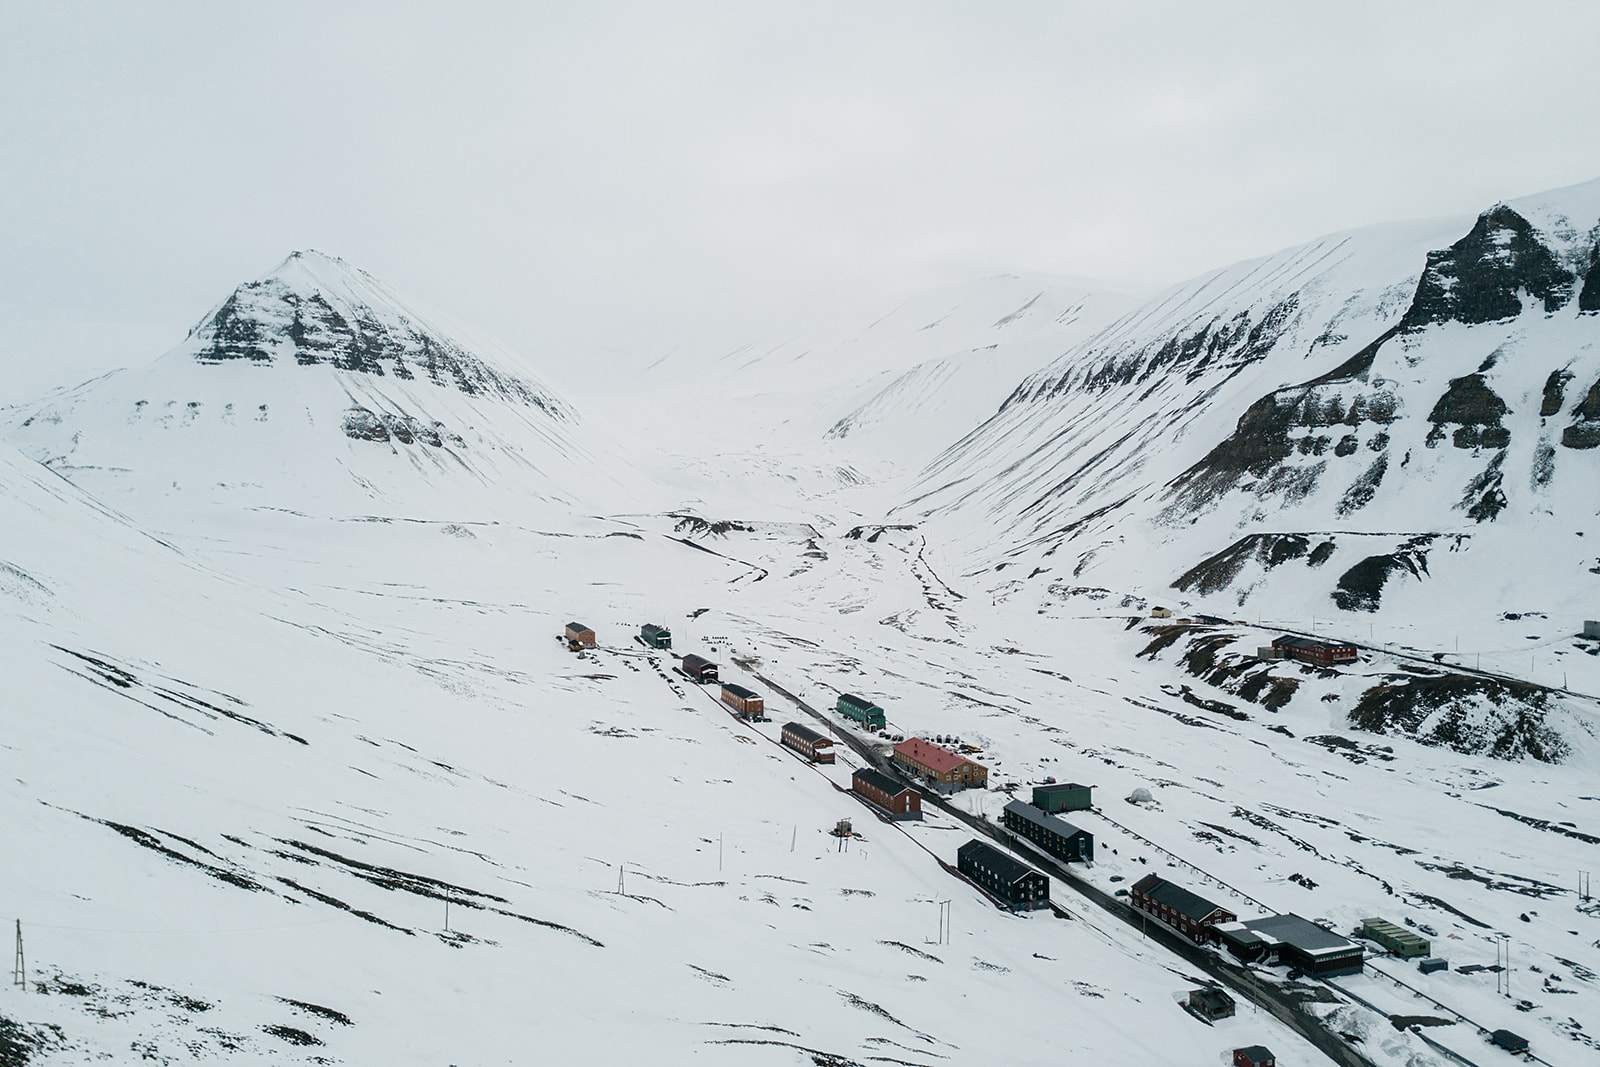 snow covered settlement of Longyearbyen on Svalbard